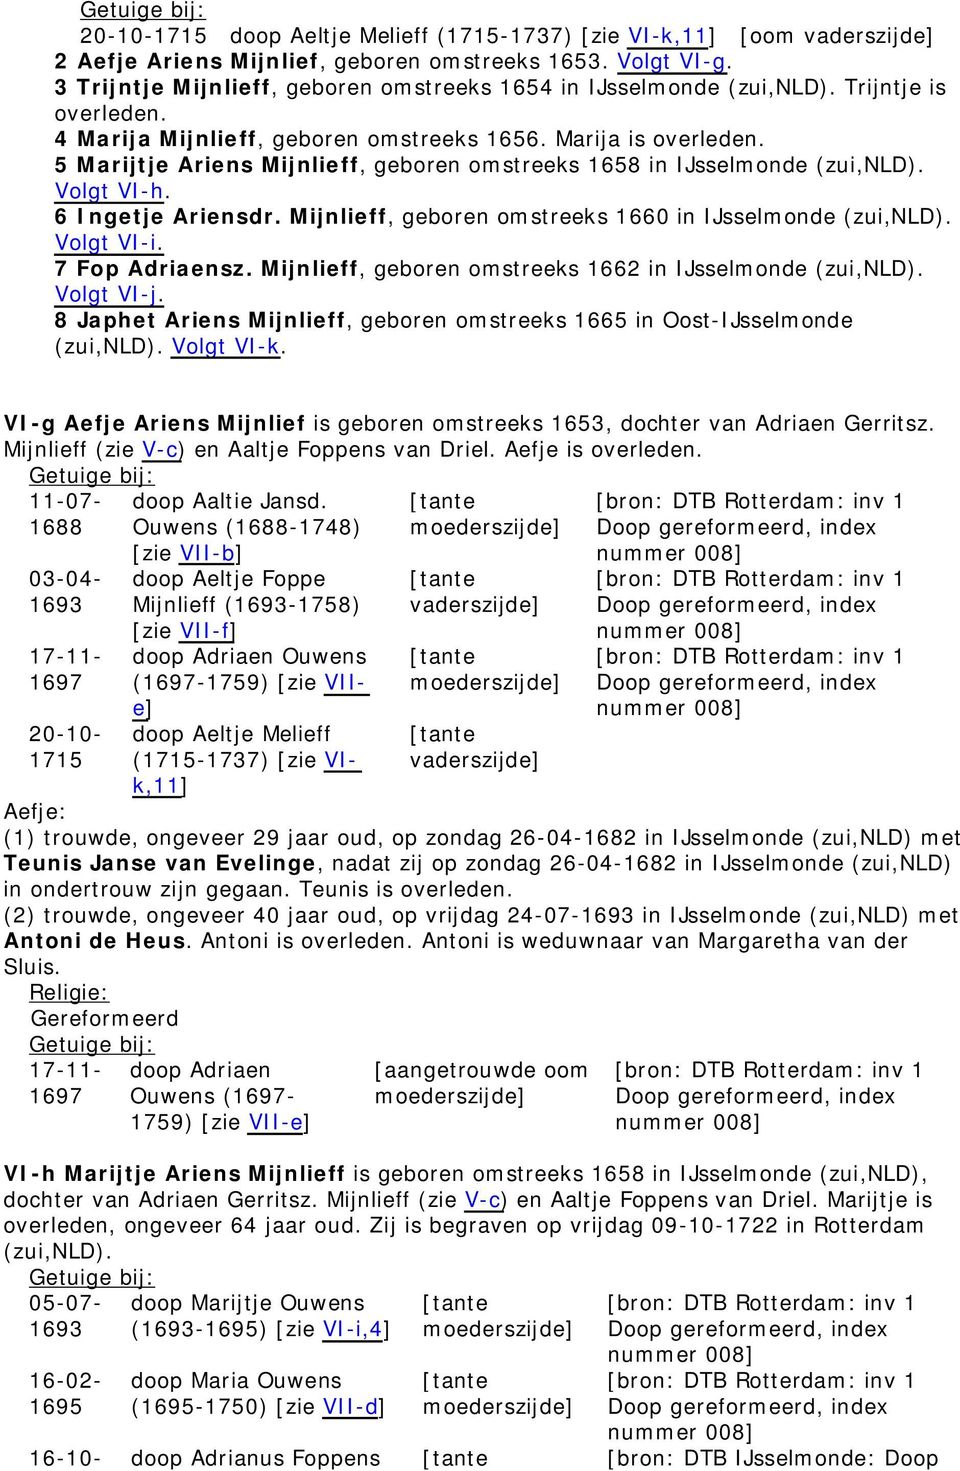 5 Marijtje Ariens Mijnlieff, geboren omstreeks 1658 in IJsselmonde (zui,nld). Volgt VI-h. 6 Ingetje Ariensdr. Mijnlieff, geboren omstreeks 1660 in IJsselmonde (zui,nld). Volgt VI-i. 7 Fop Adriaensz.